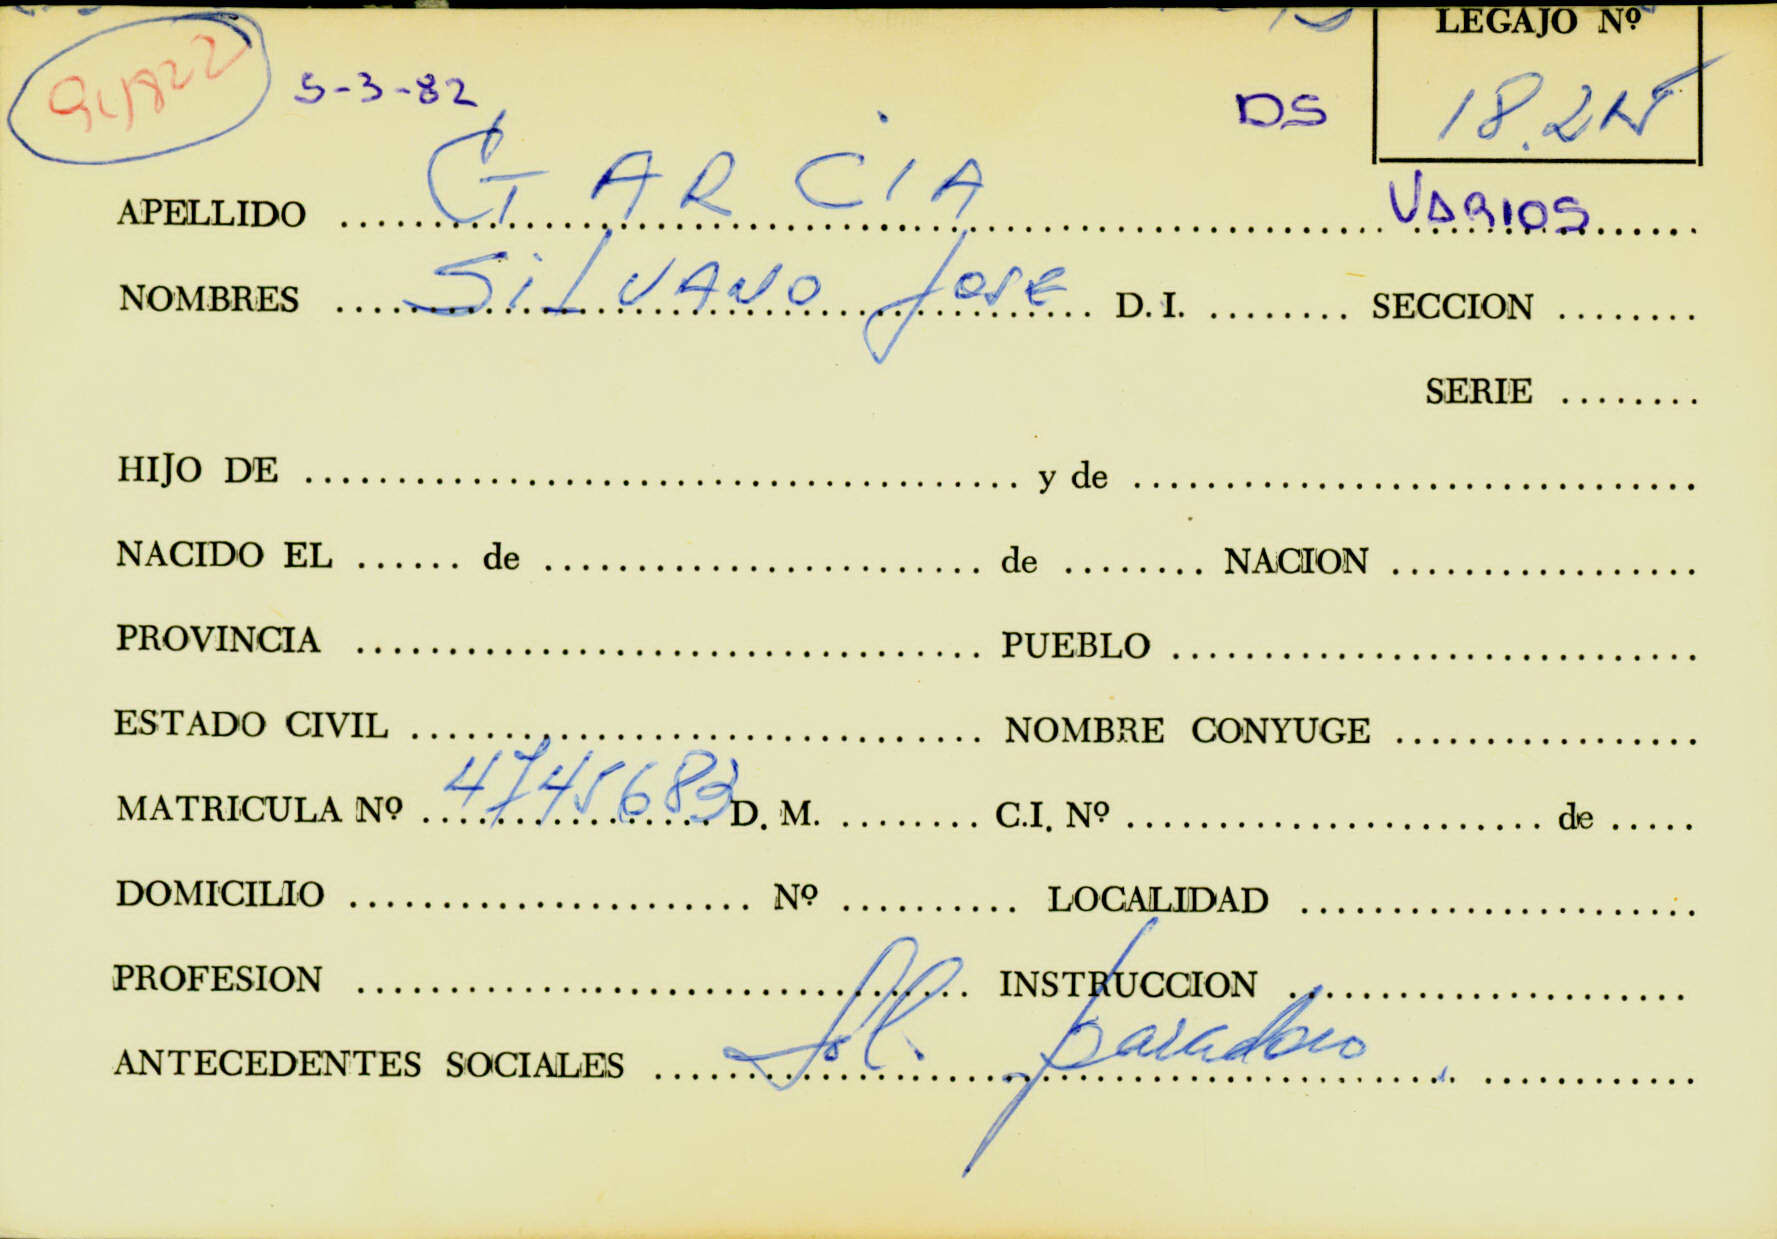 Ficha de García Silvano José que remite al legajo Mesa Ds 18215. CPM-Fondo DIPPBA- Div. Cen AyF, fichero onomástico. Año 1982.